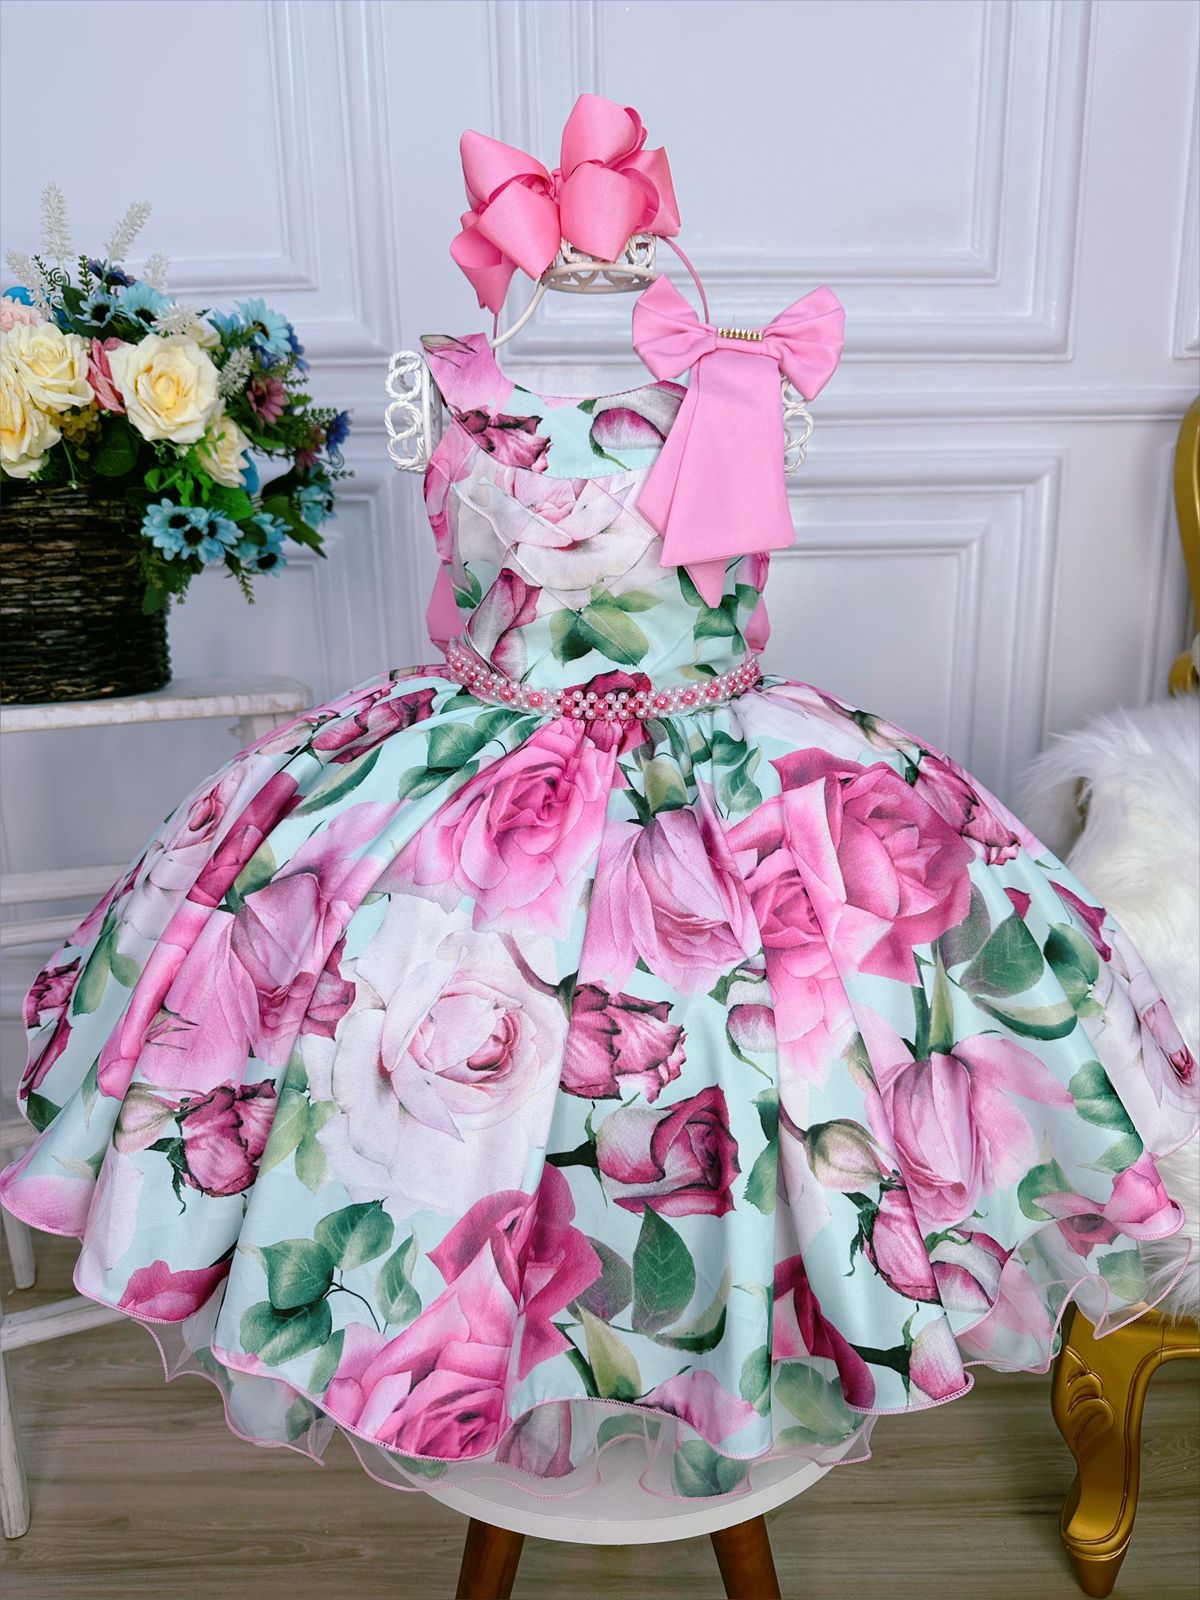 Vestido Infantil Rosa Chiclete Floral Aplique Laço Pérolas